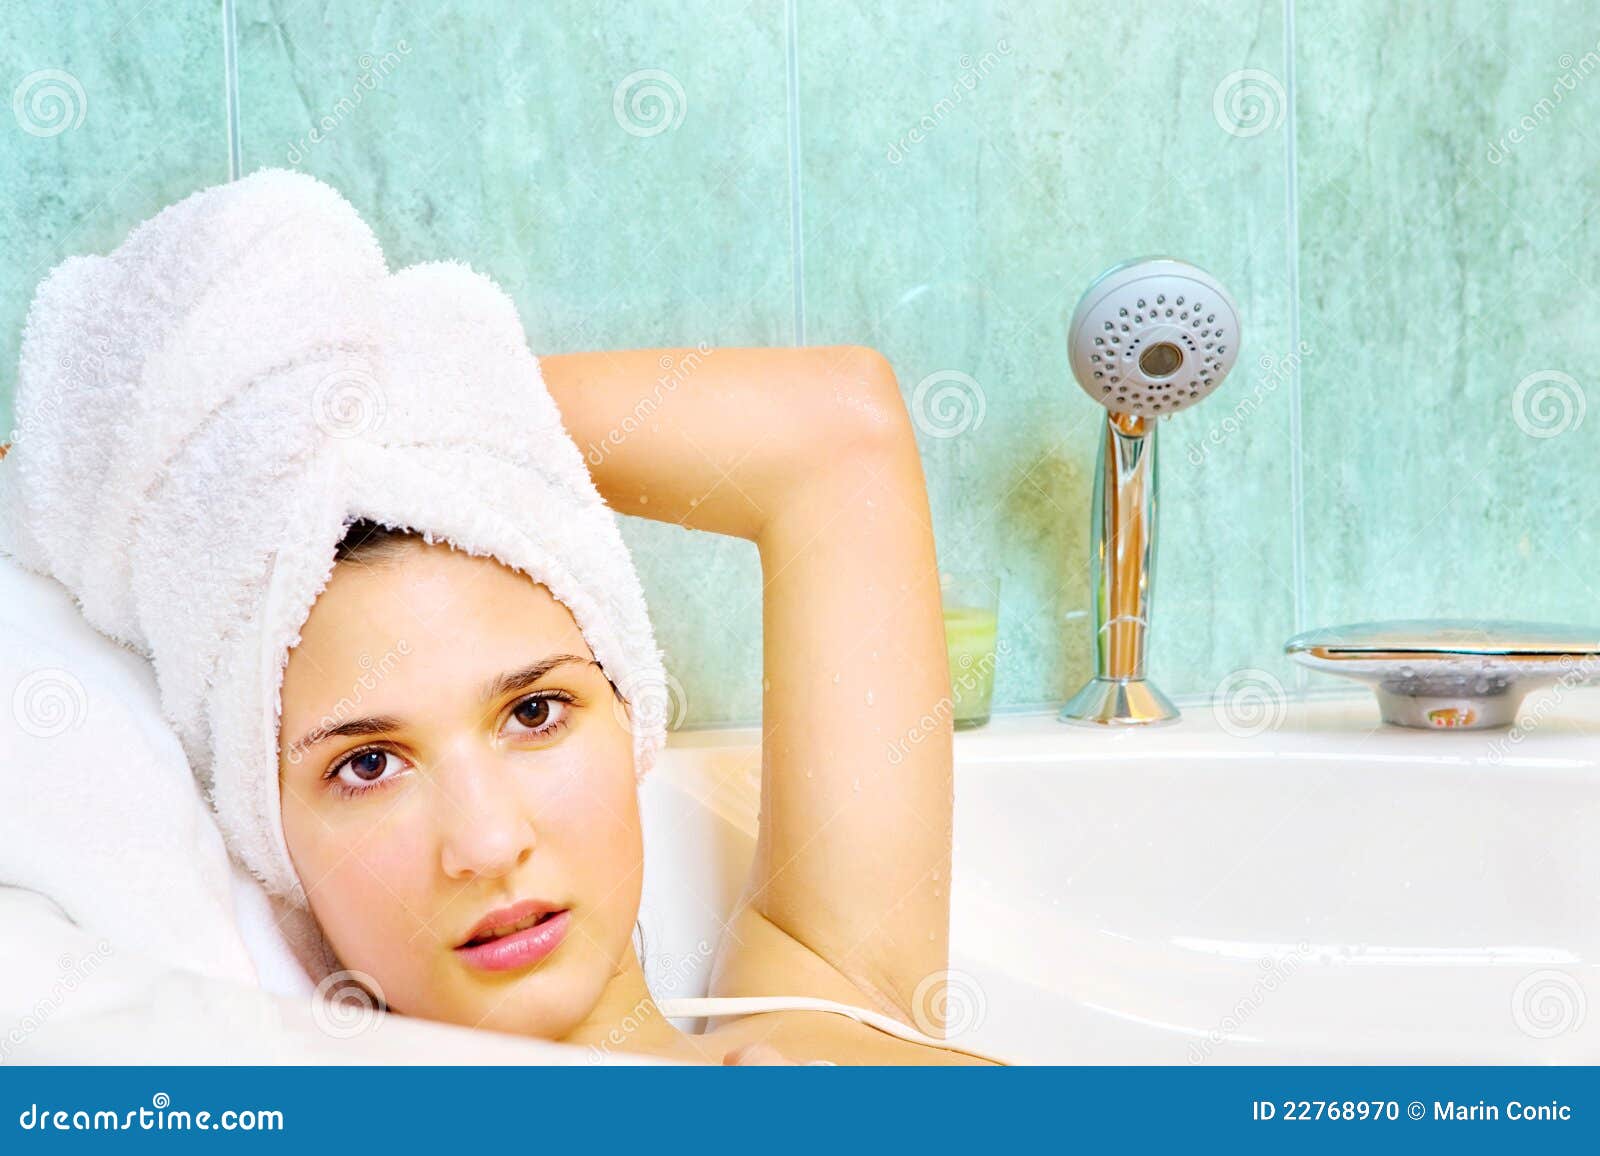 Сестра после ванны. Девушка в полотенце в ванной. Женщина с полотенцем на голове. Девушка после ванной. Мытая голова в полотенце.